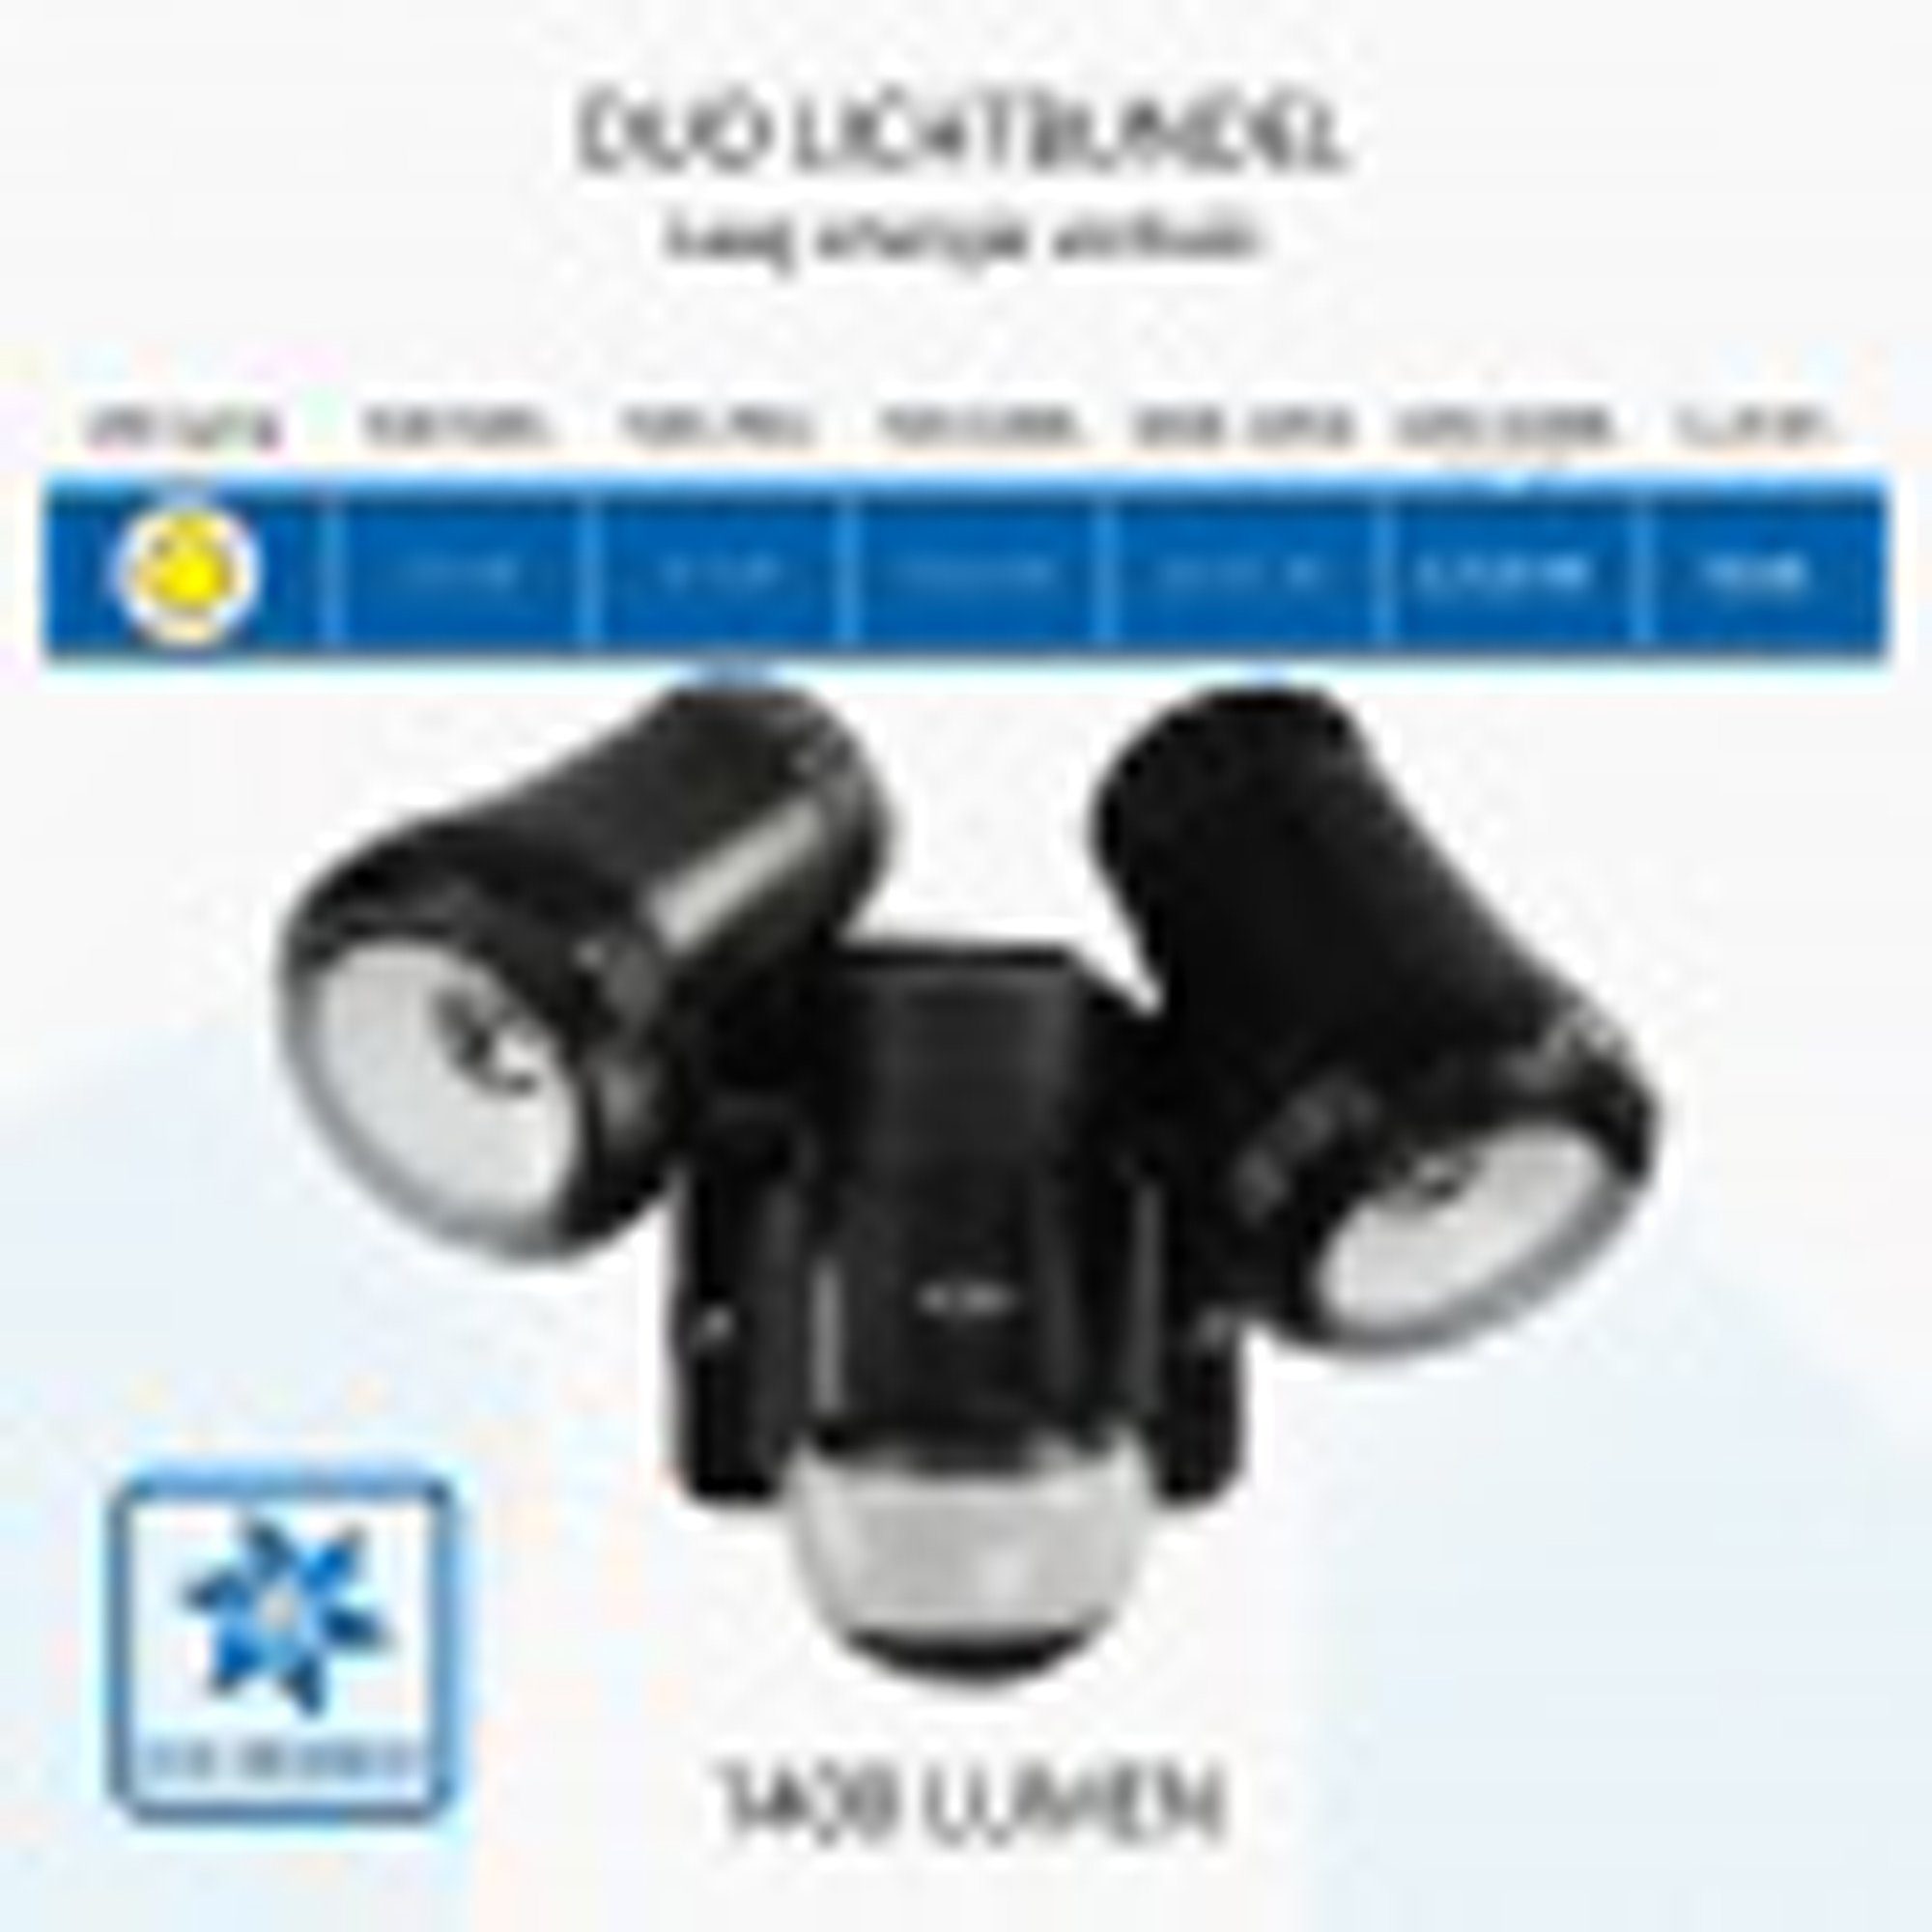 LED mit Elro Bewegungsmelder Bewegungssensor LF80-20-P, 2-köpfige Außenleuchte